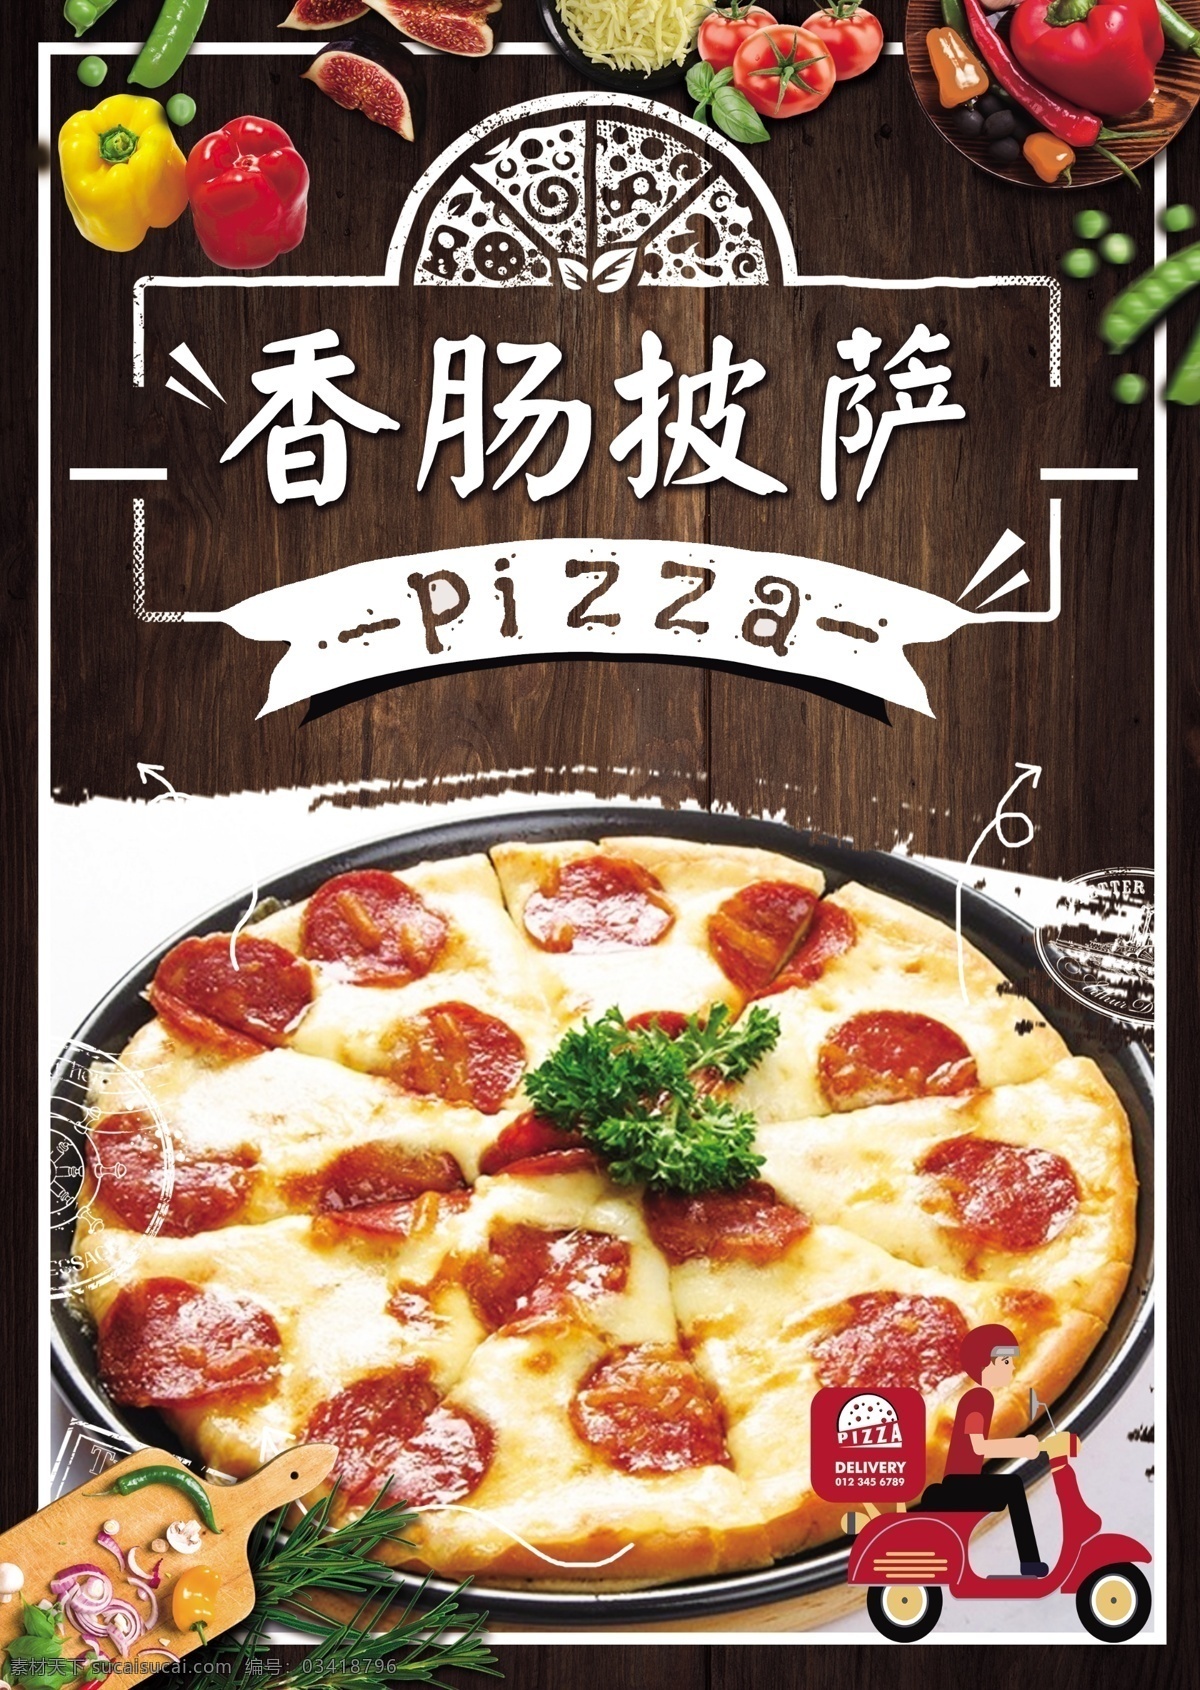 香肠披萨 pizza 披萨 披萨店 烤披萨 做披萨 披萨图片 披萨海报 披萨展板 披萨墙画 披萨菜单 牛肉披萨 夏威夷披萨 bbq披萨 田园披萨 水果披萨 菠萝披萨 意式披萨 披萨字体 培根披萨 至尊披萨 披萨展架 西餐披萨 披萨广告 披萨宣传 披萨制作 外卖披萨 披萨宣传单 披萨单页 美味披萨